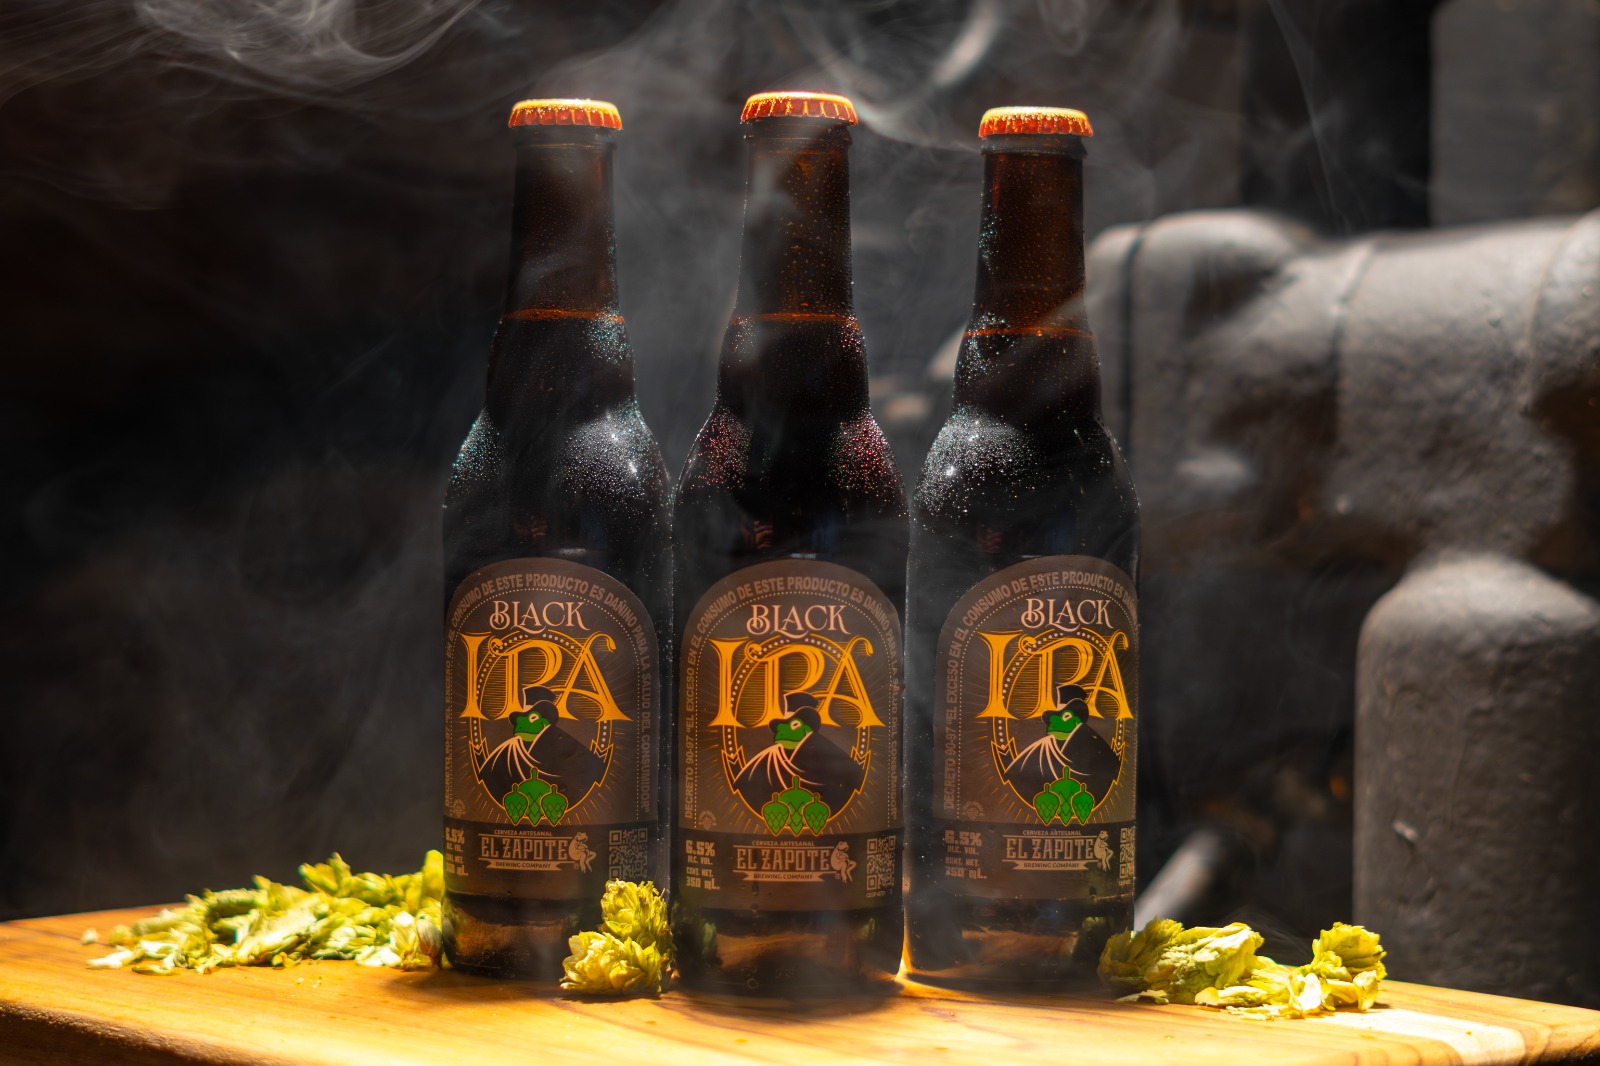 Descubre el lado oscuro de la cerveza artesanal, con la nueva Black IPA